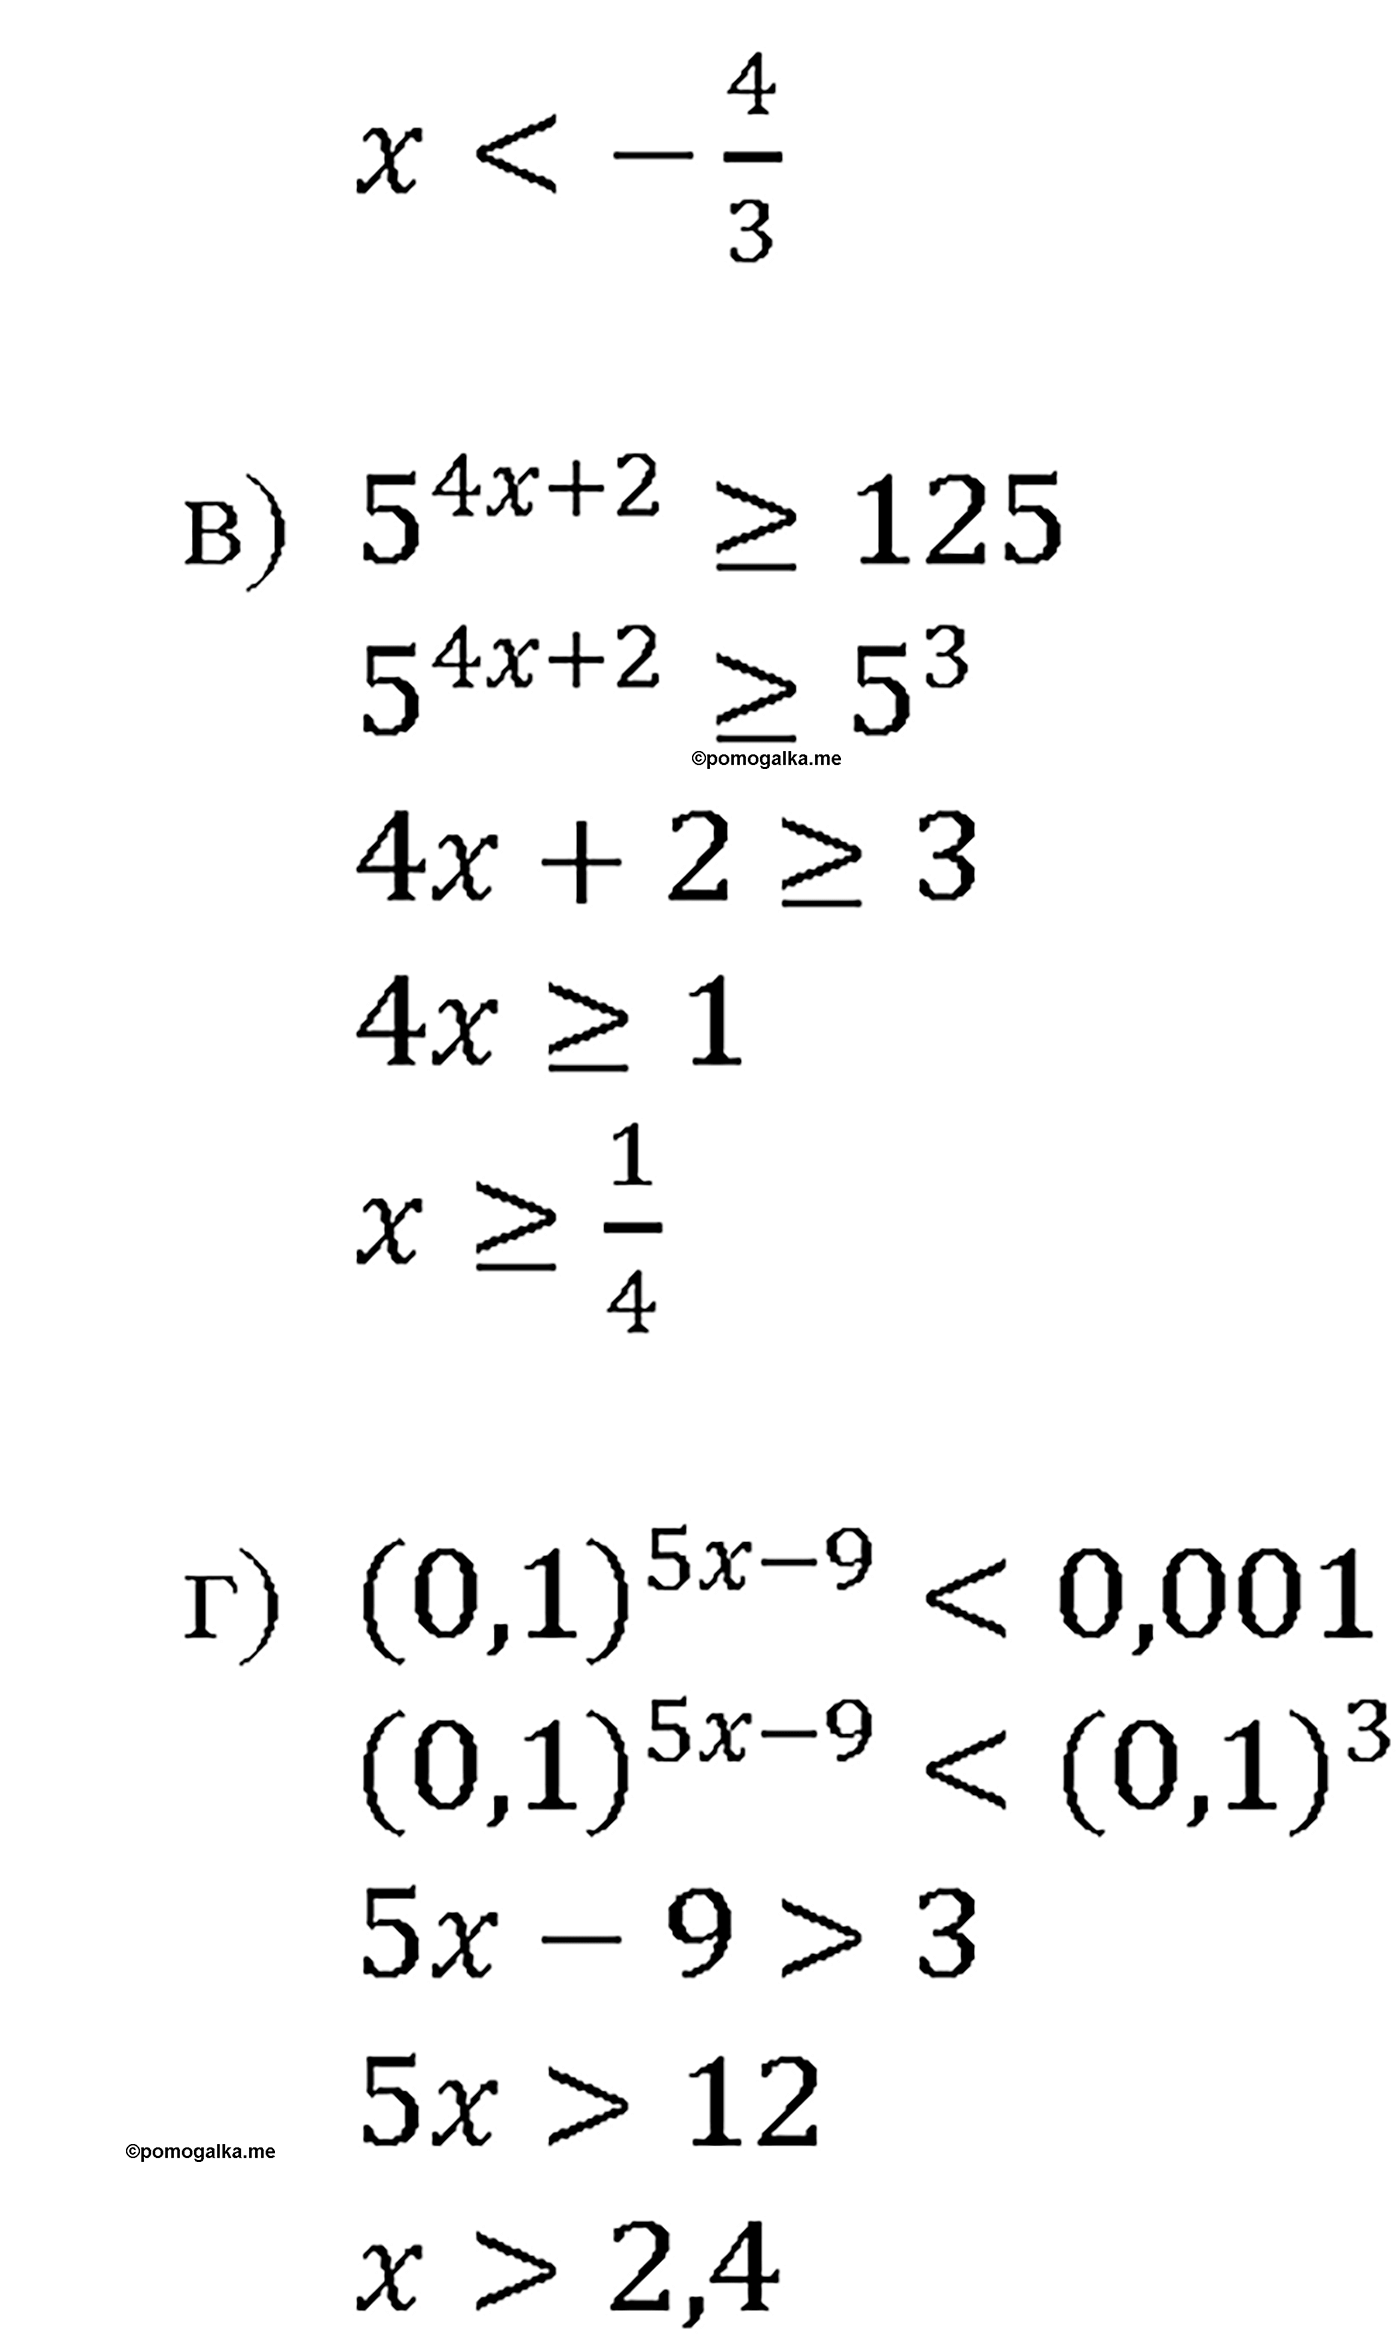 задача №40.32 алгебра 10-11 класс Мордкович